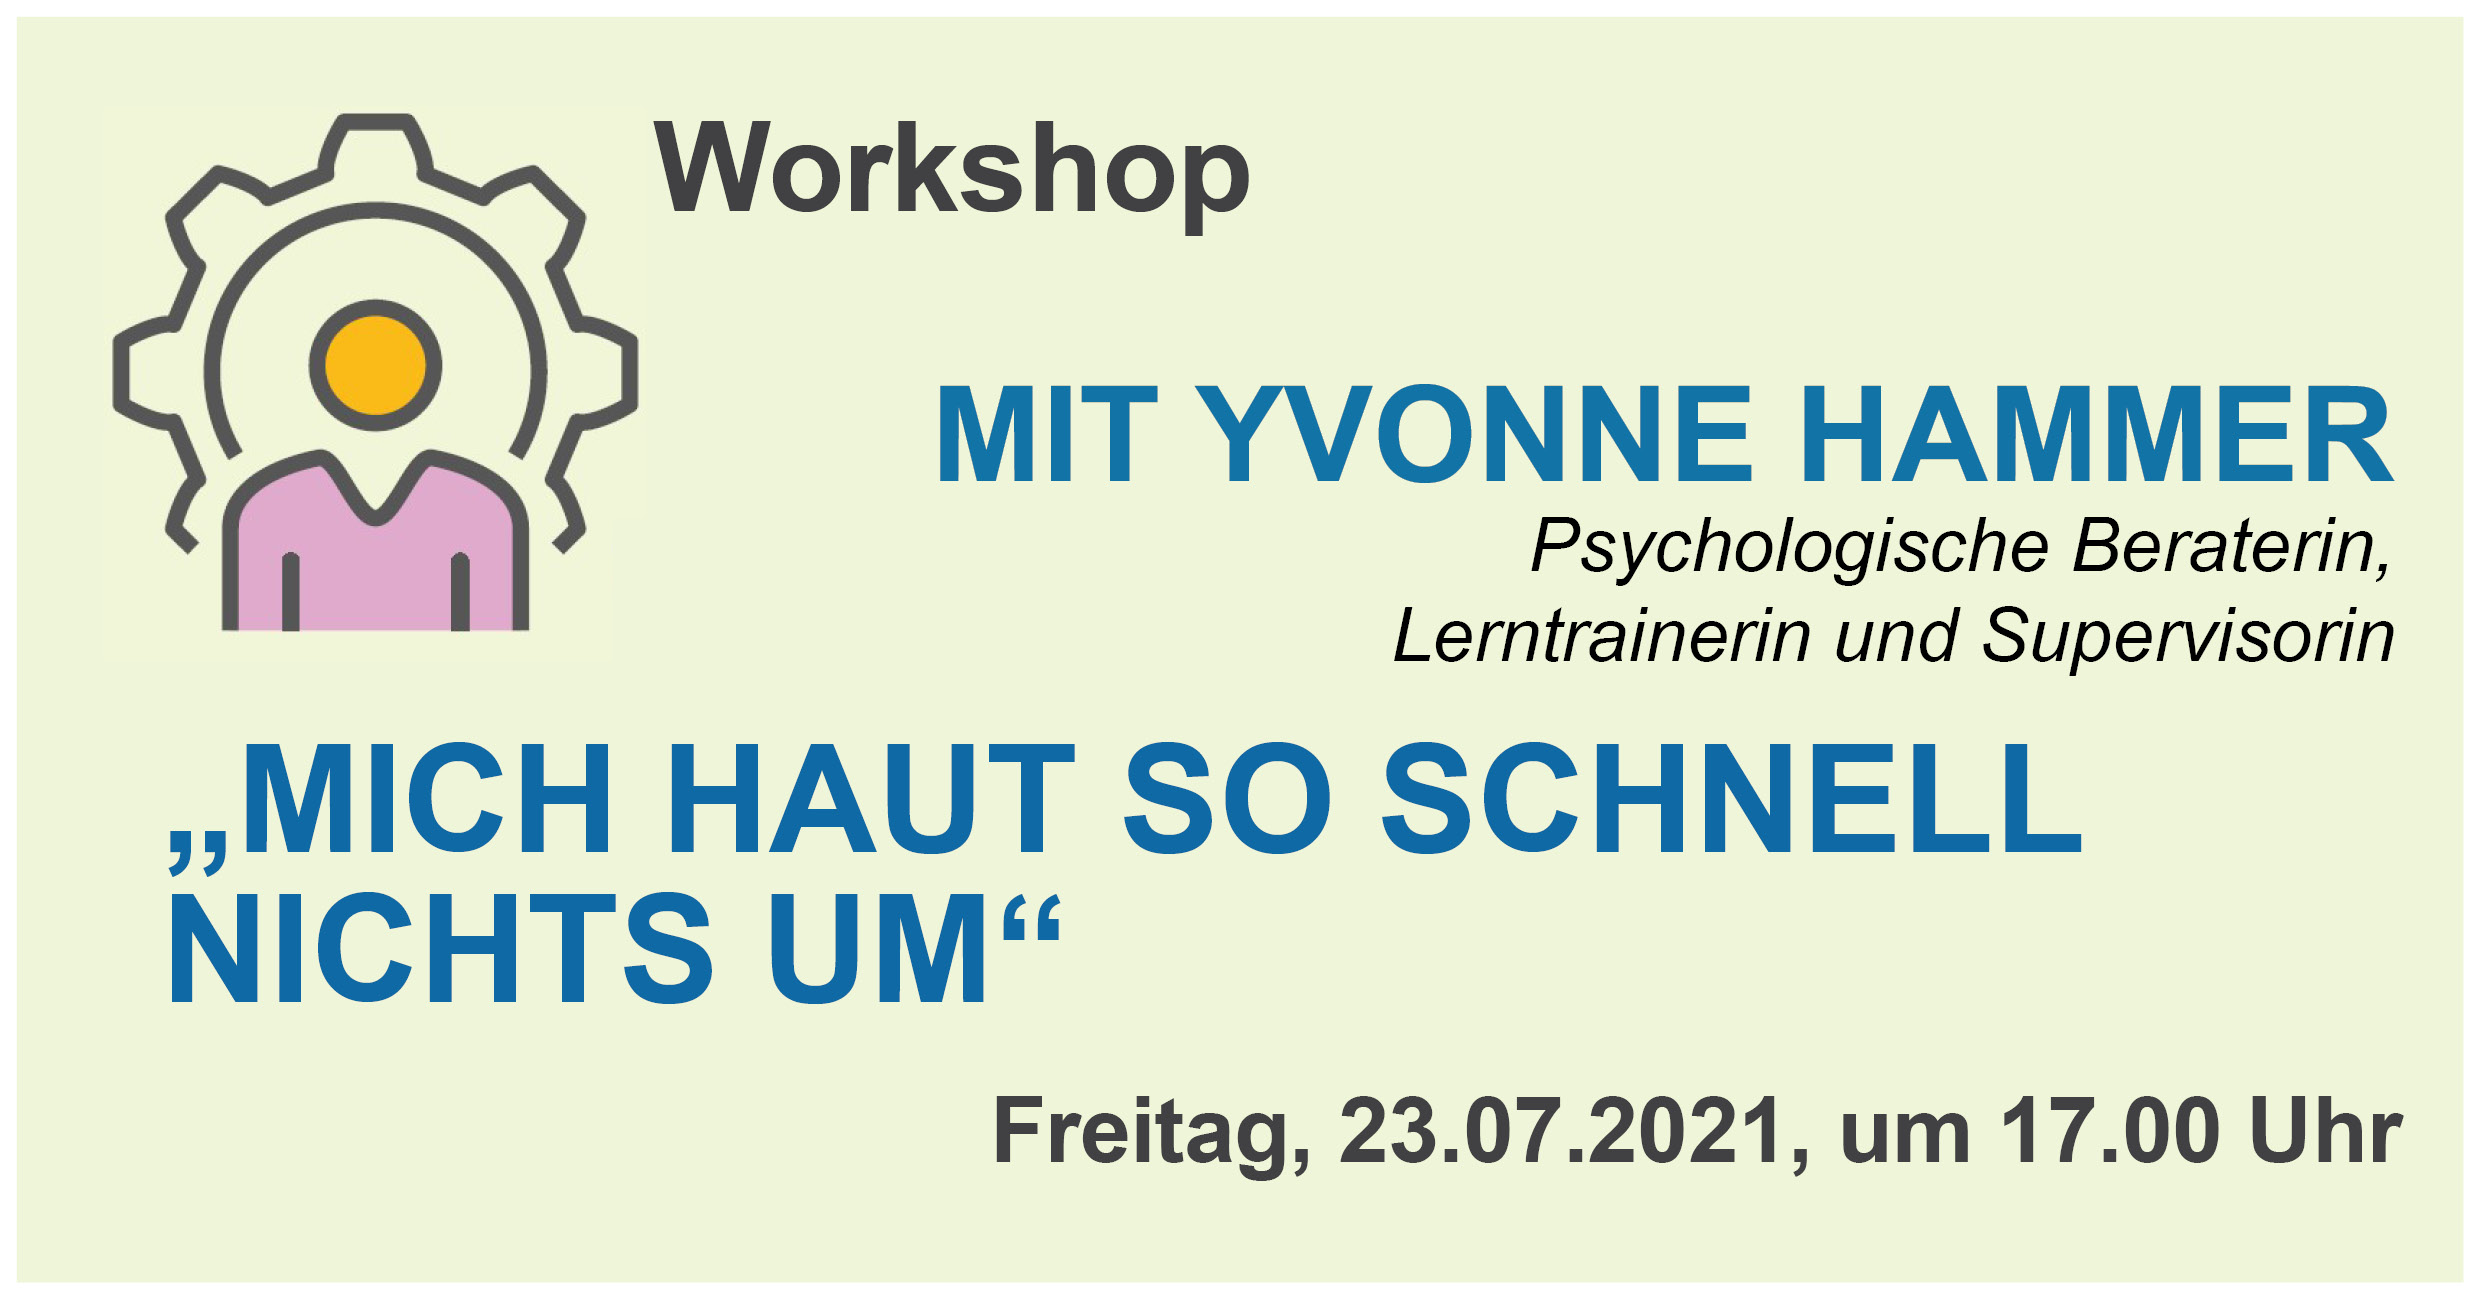 Online Workshop "Mich haut so schnell nichts um" mit Yvonne Hammer